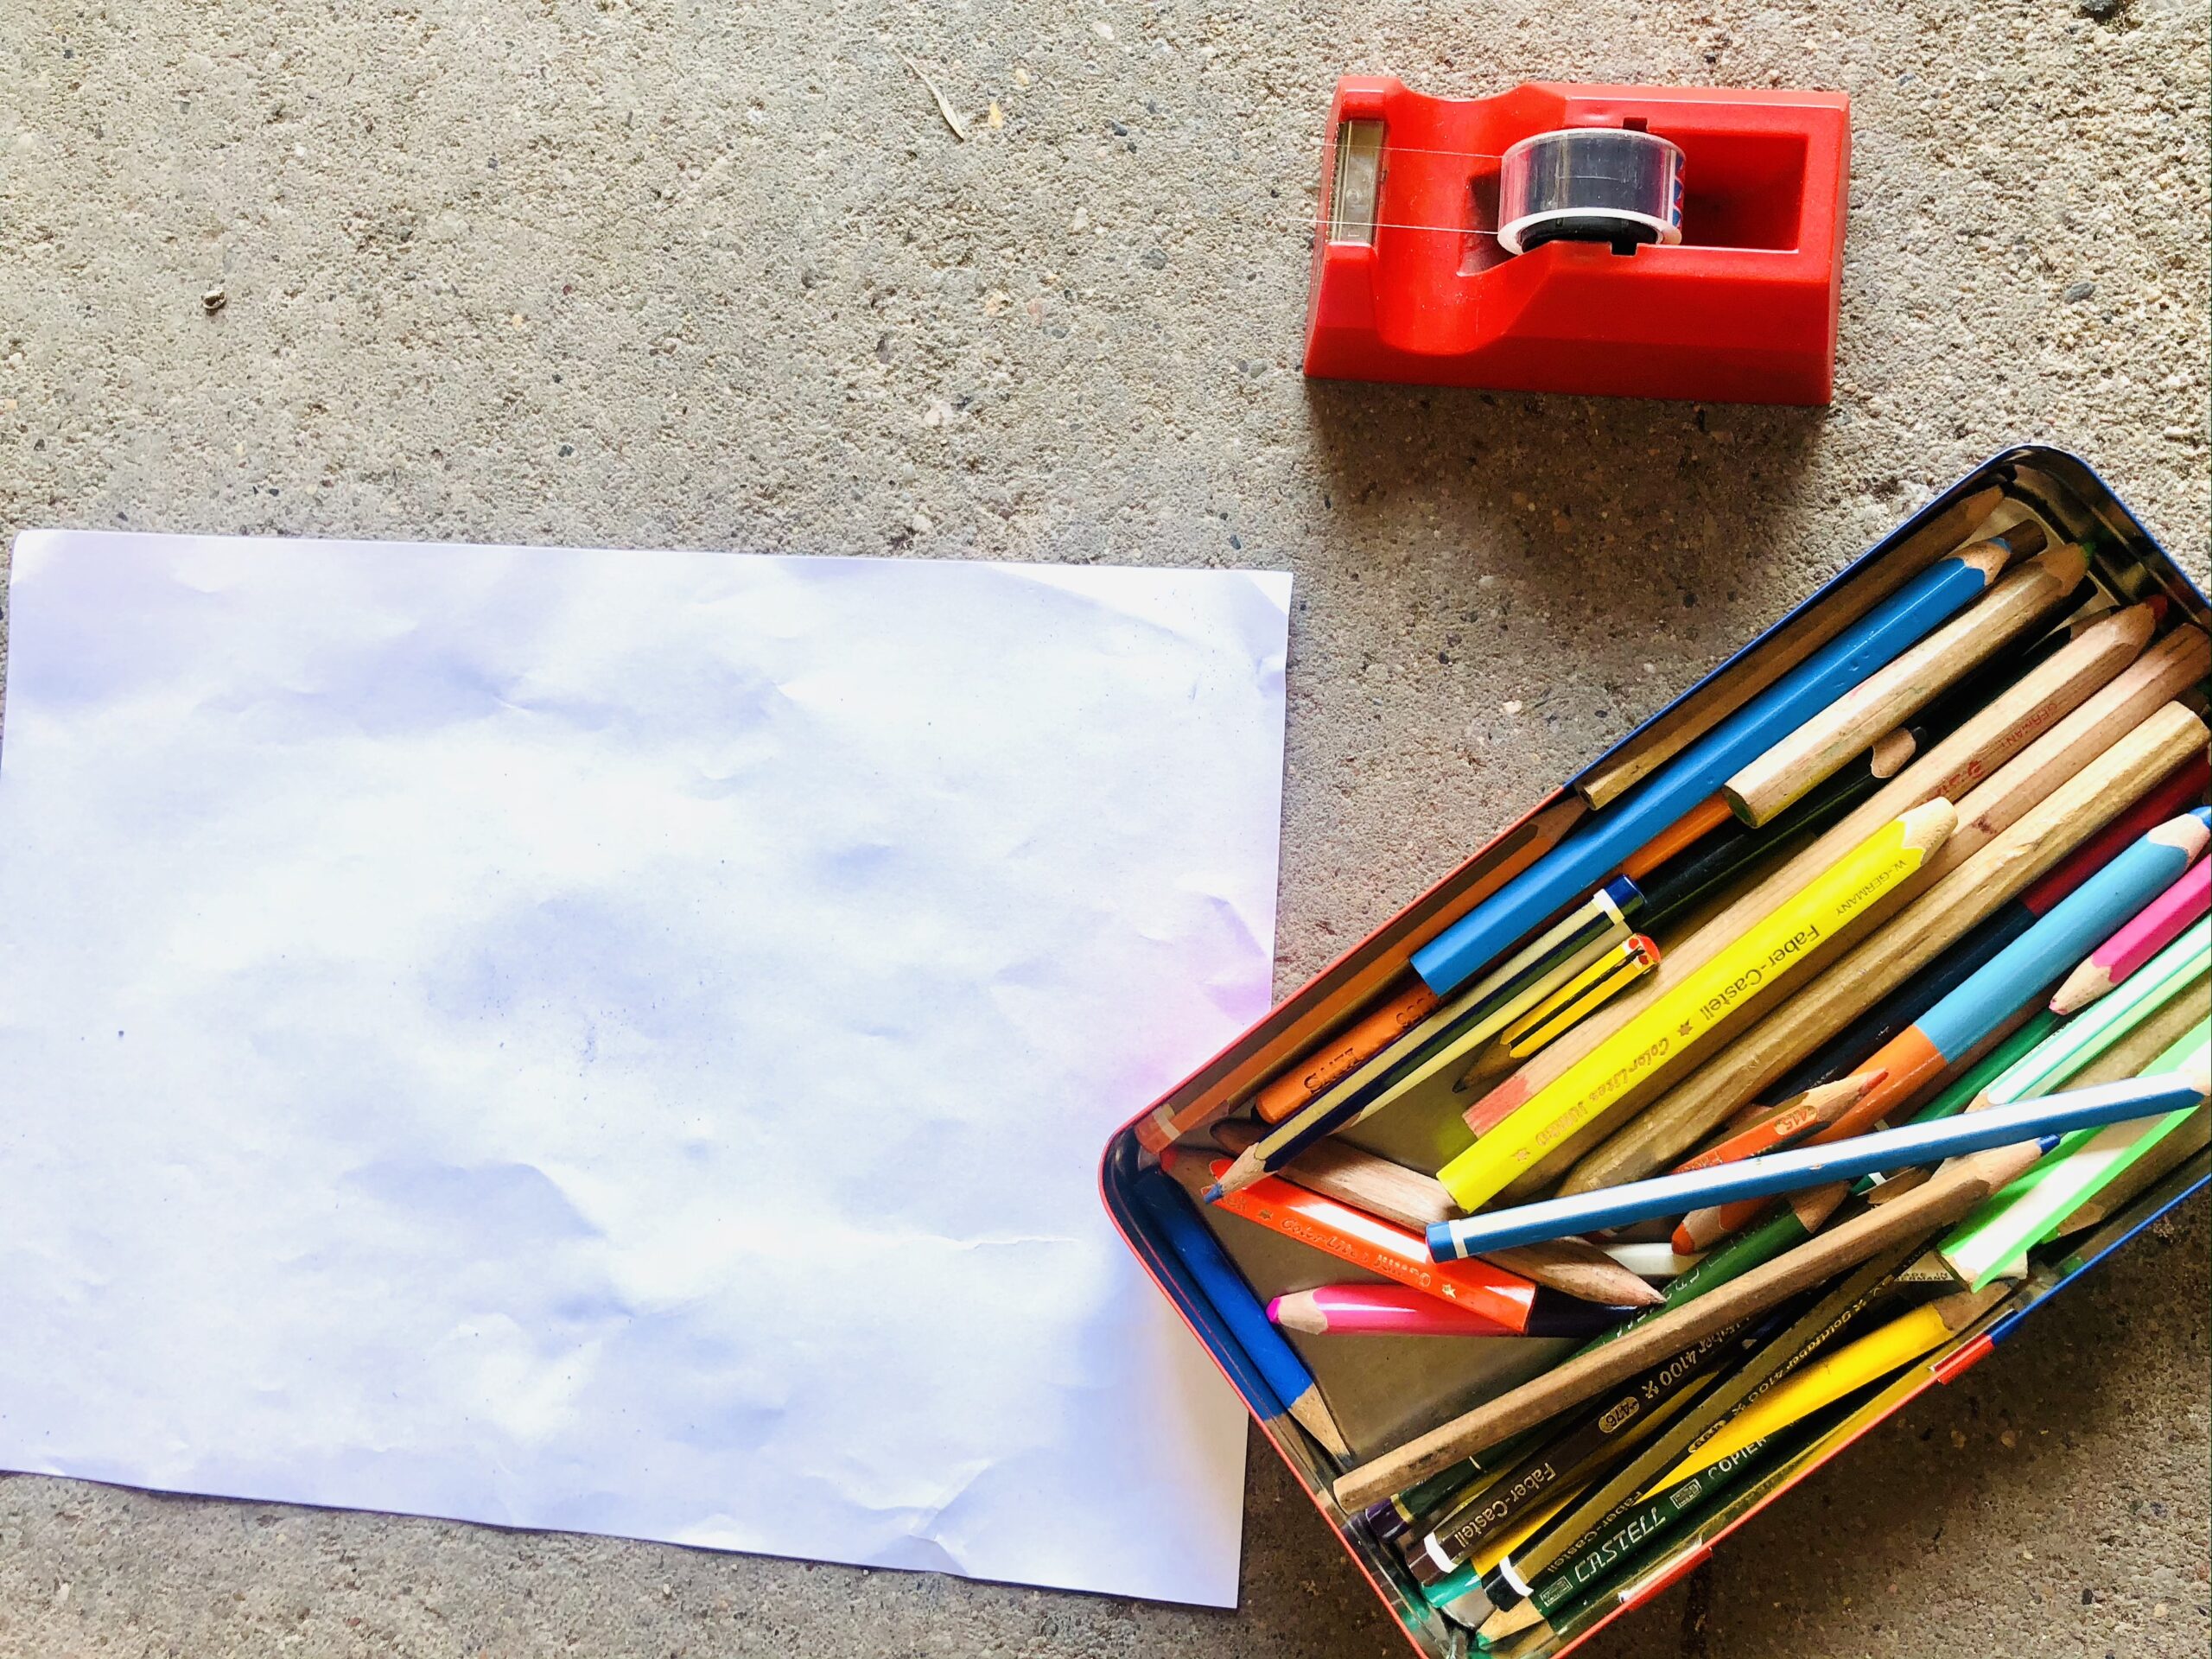 Bild zum Schritt 1 für das Bastel- und DIY-Abenteuer für Kinder: 'Zuerst sucht ihr euch die Materialien zusammen.'